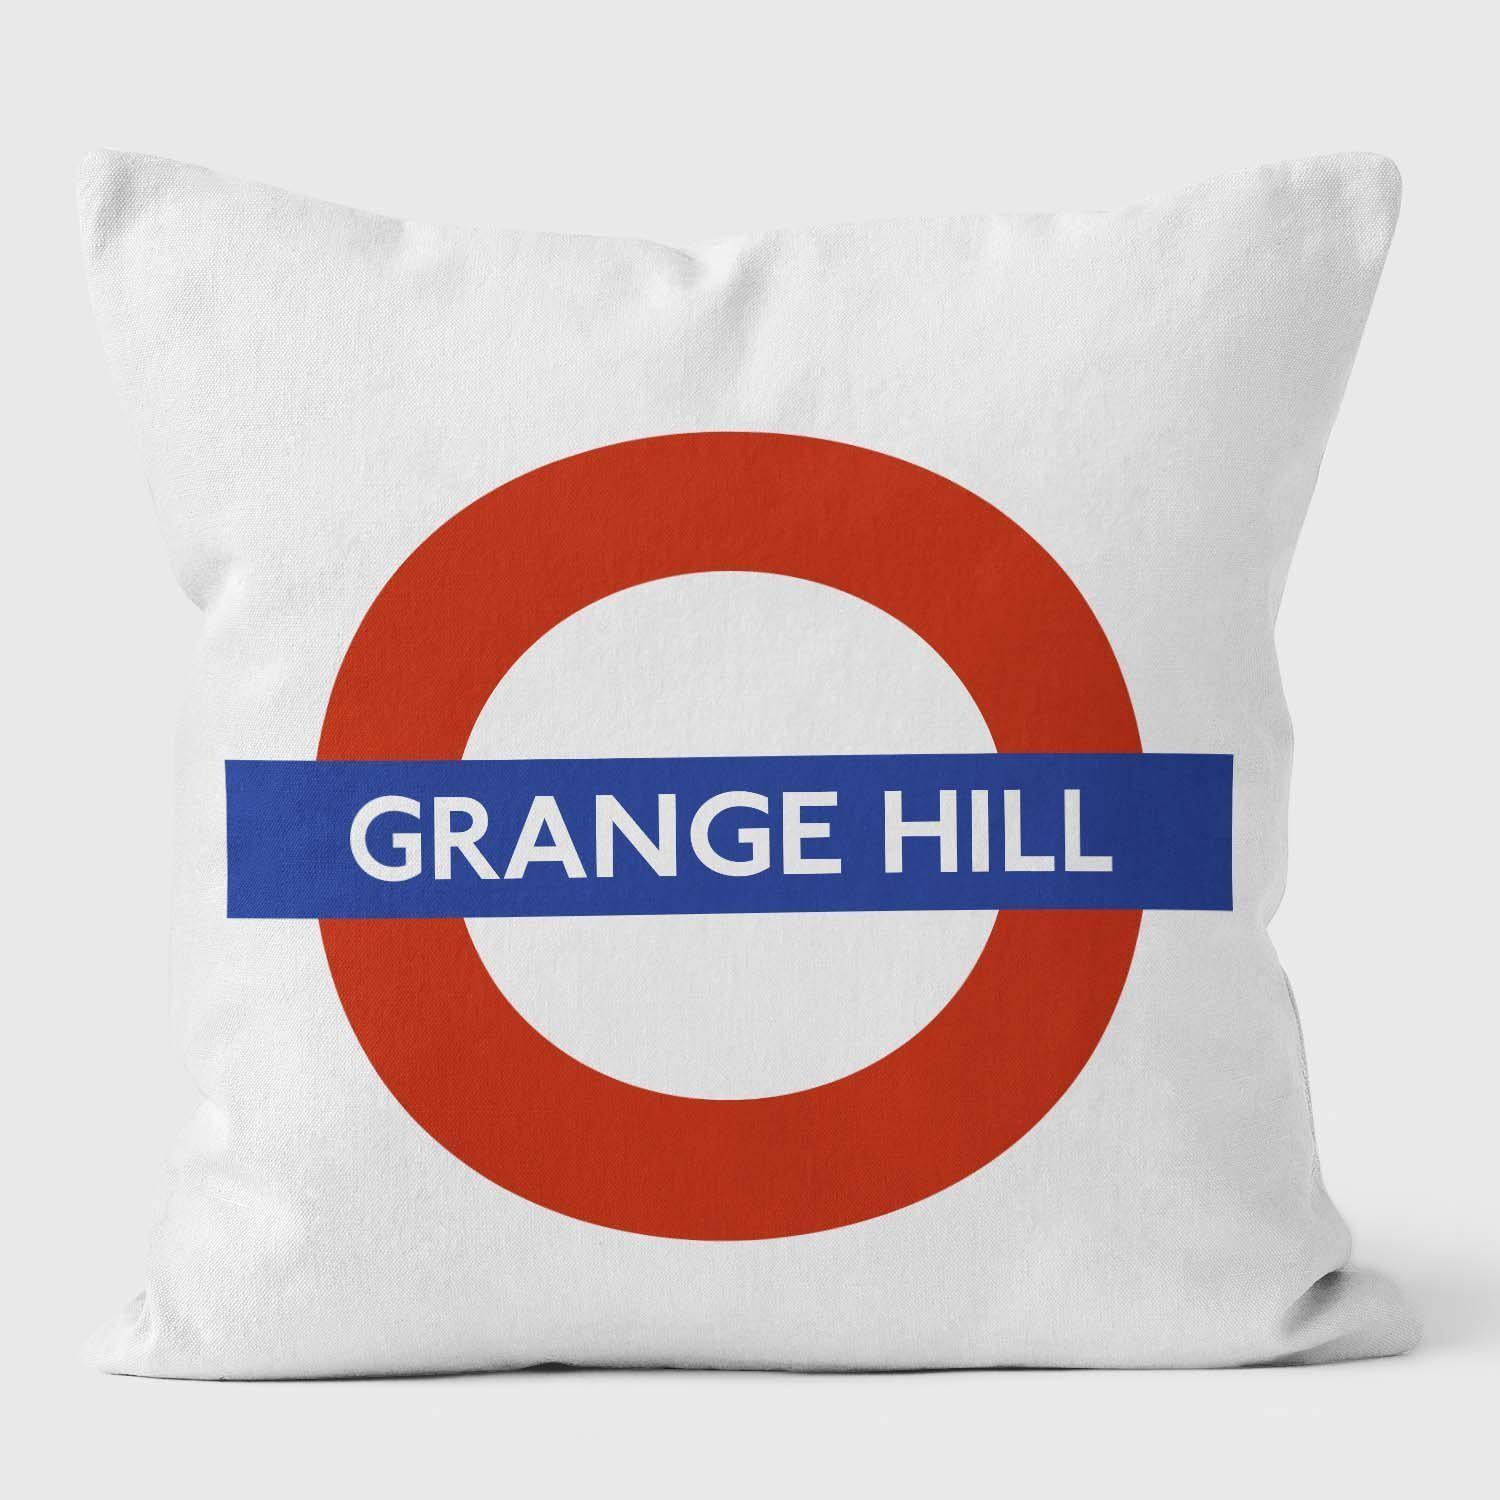 Grange Hill London Underground Tube Station Roundel Cushion - Handmade Cushions UK - WeLoveCushions